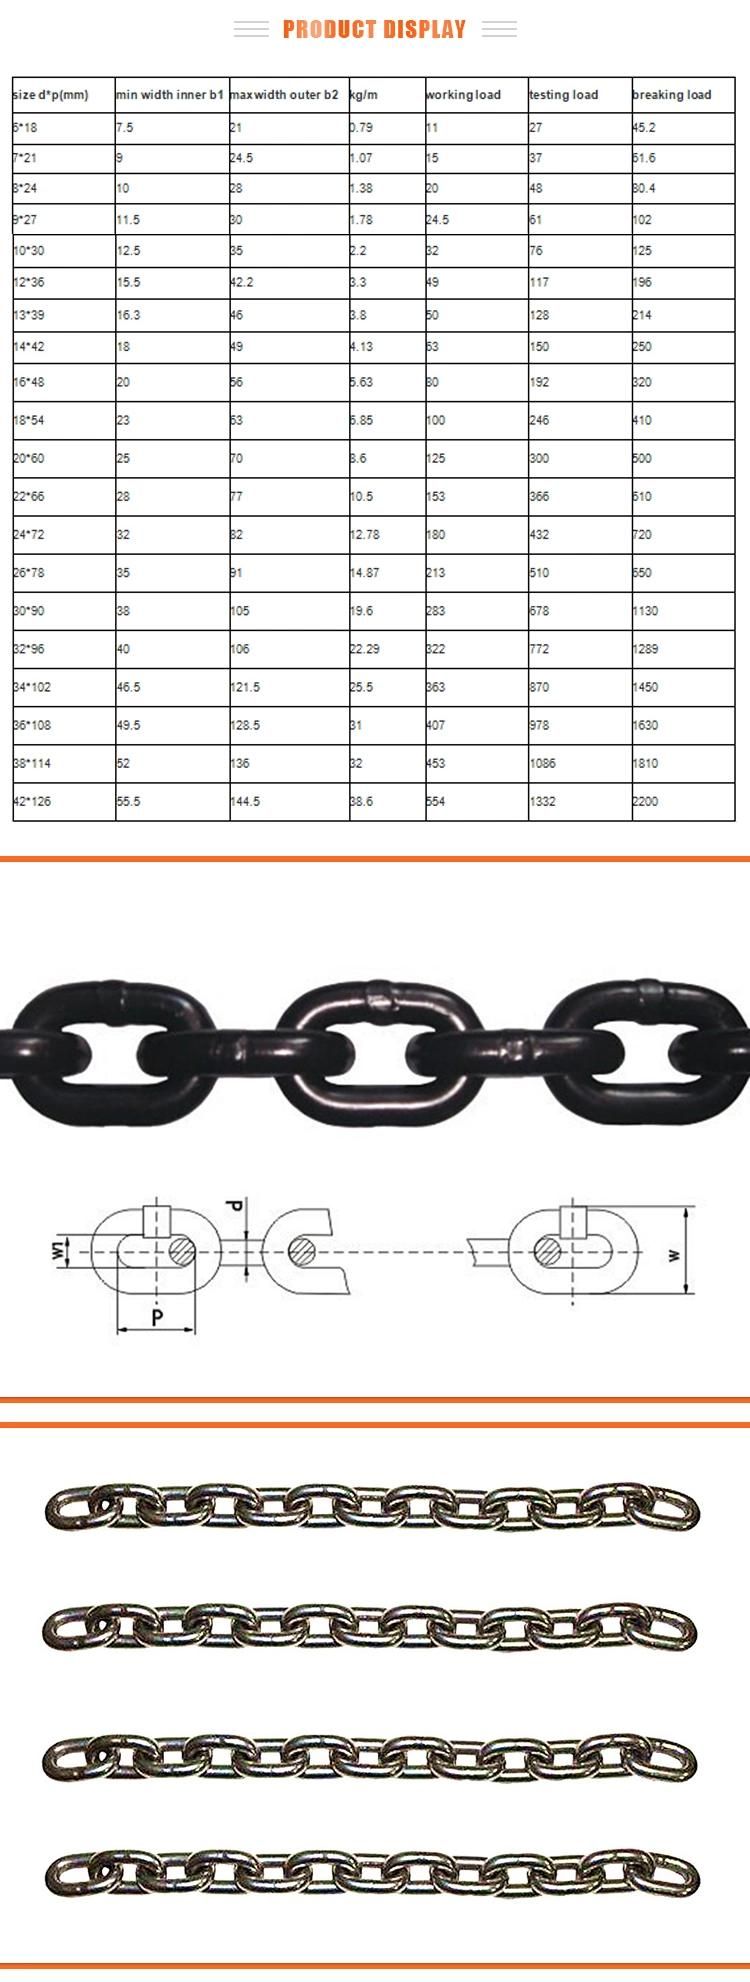 Stainless Steel Machine Chain Twist Link